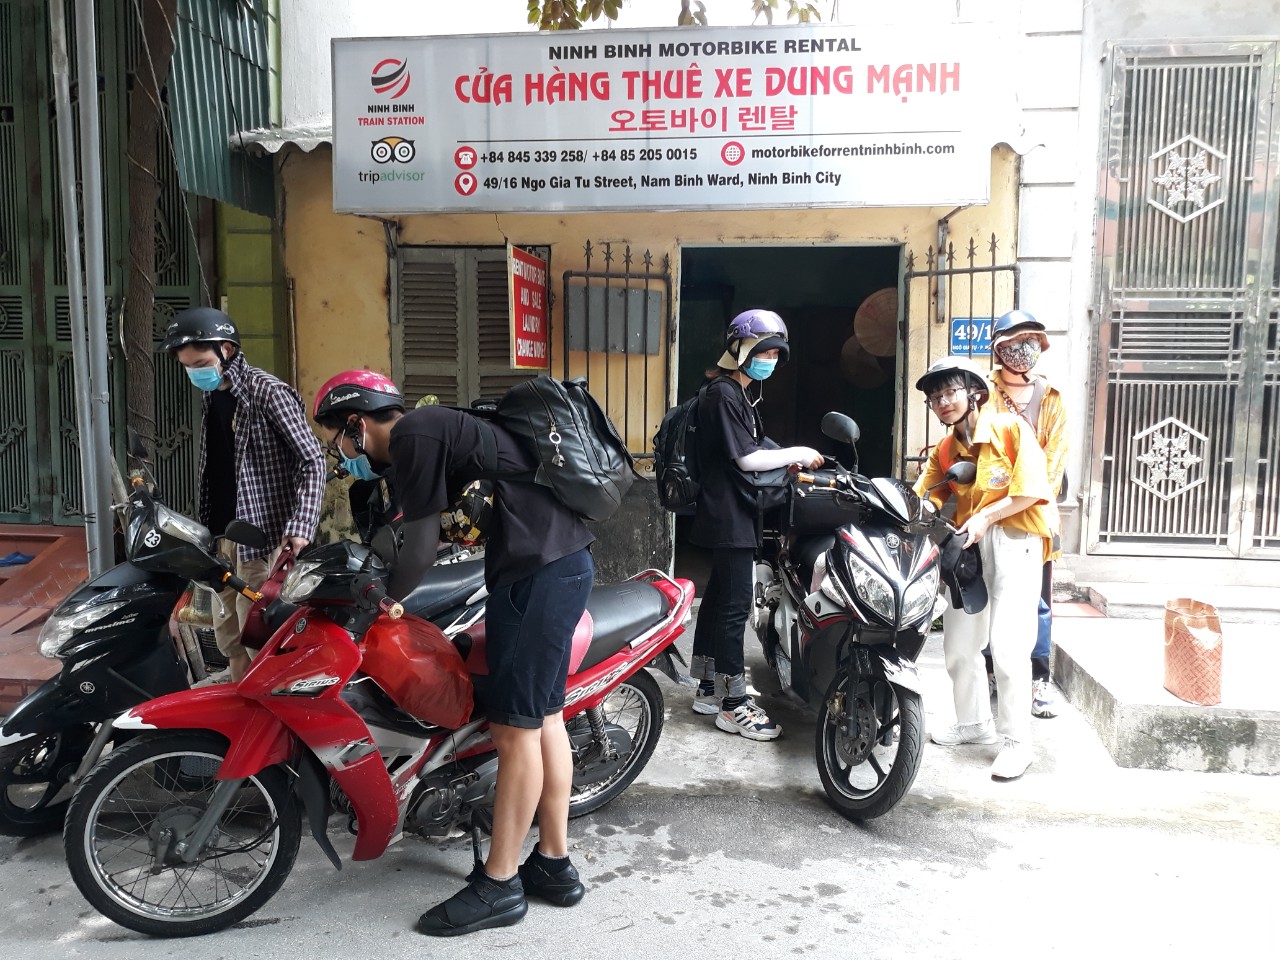 Kinh nghiệm thuê xe máy tại Ninh Bình